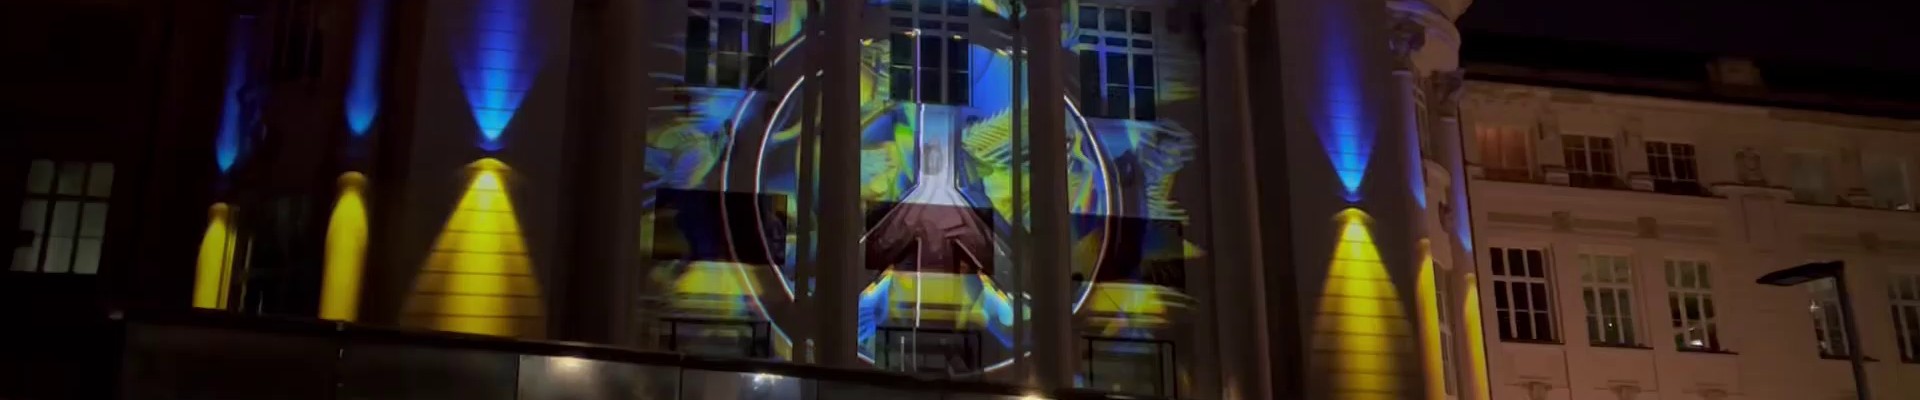 : Beleuchtung der TMW-Fassade mit ukrainischer Fahne und Friedenszeichen